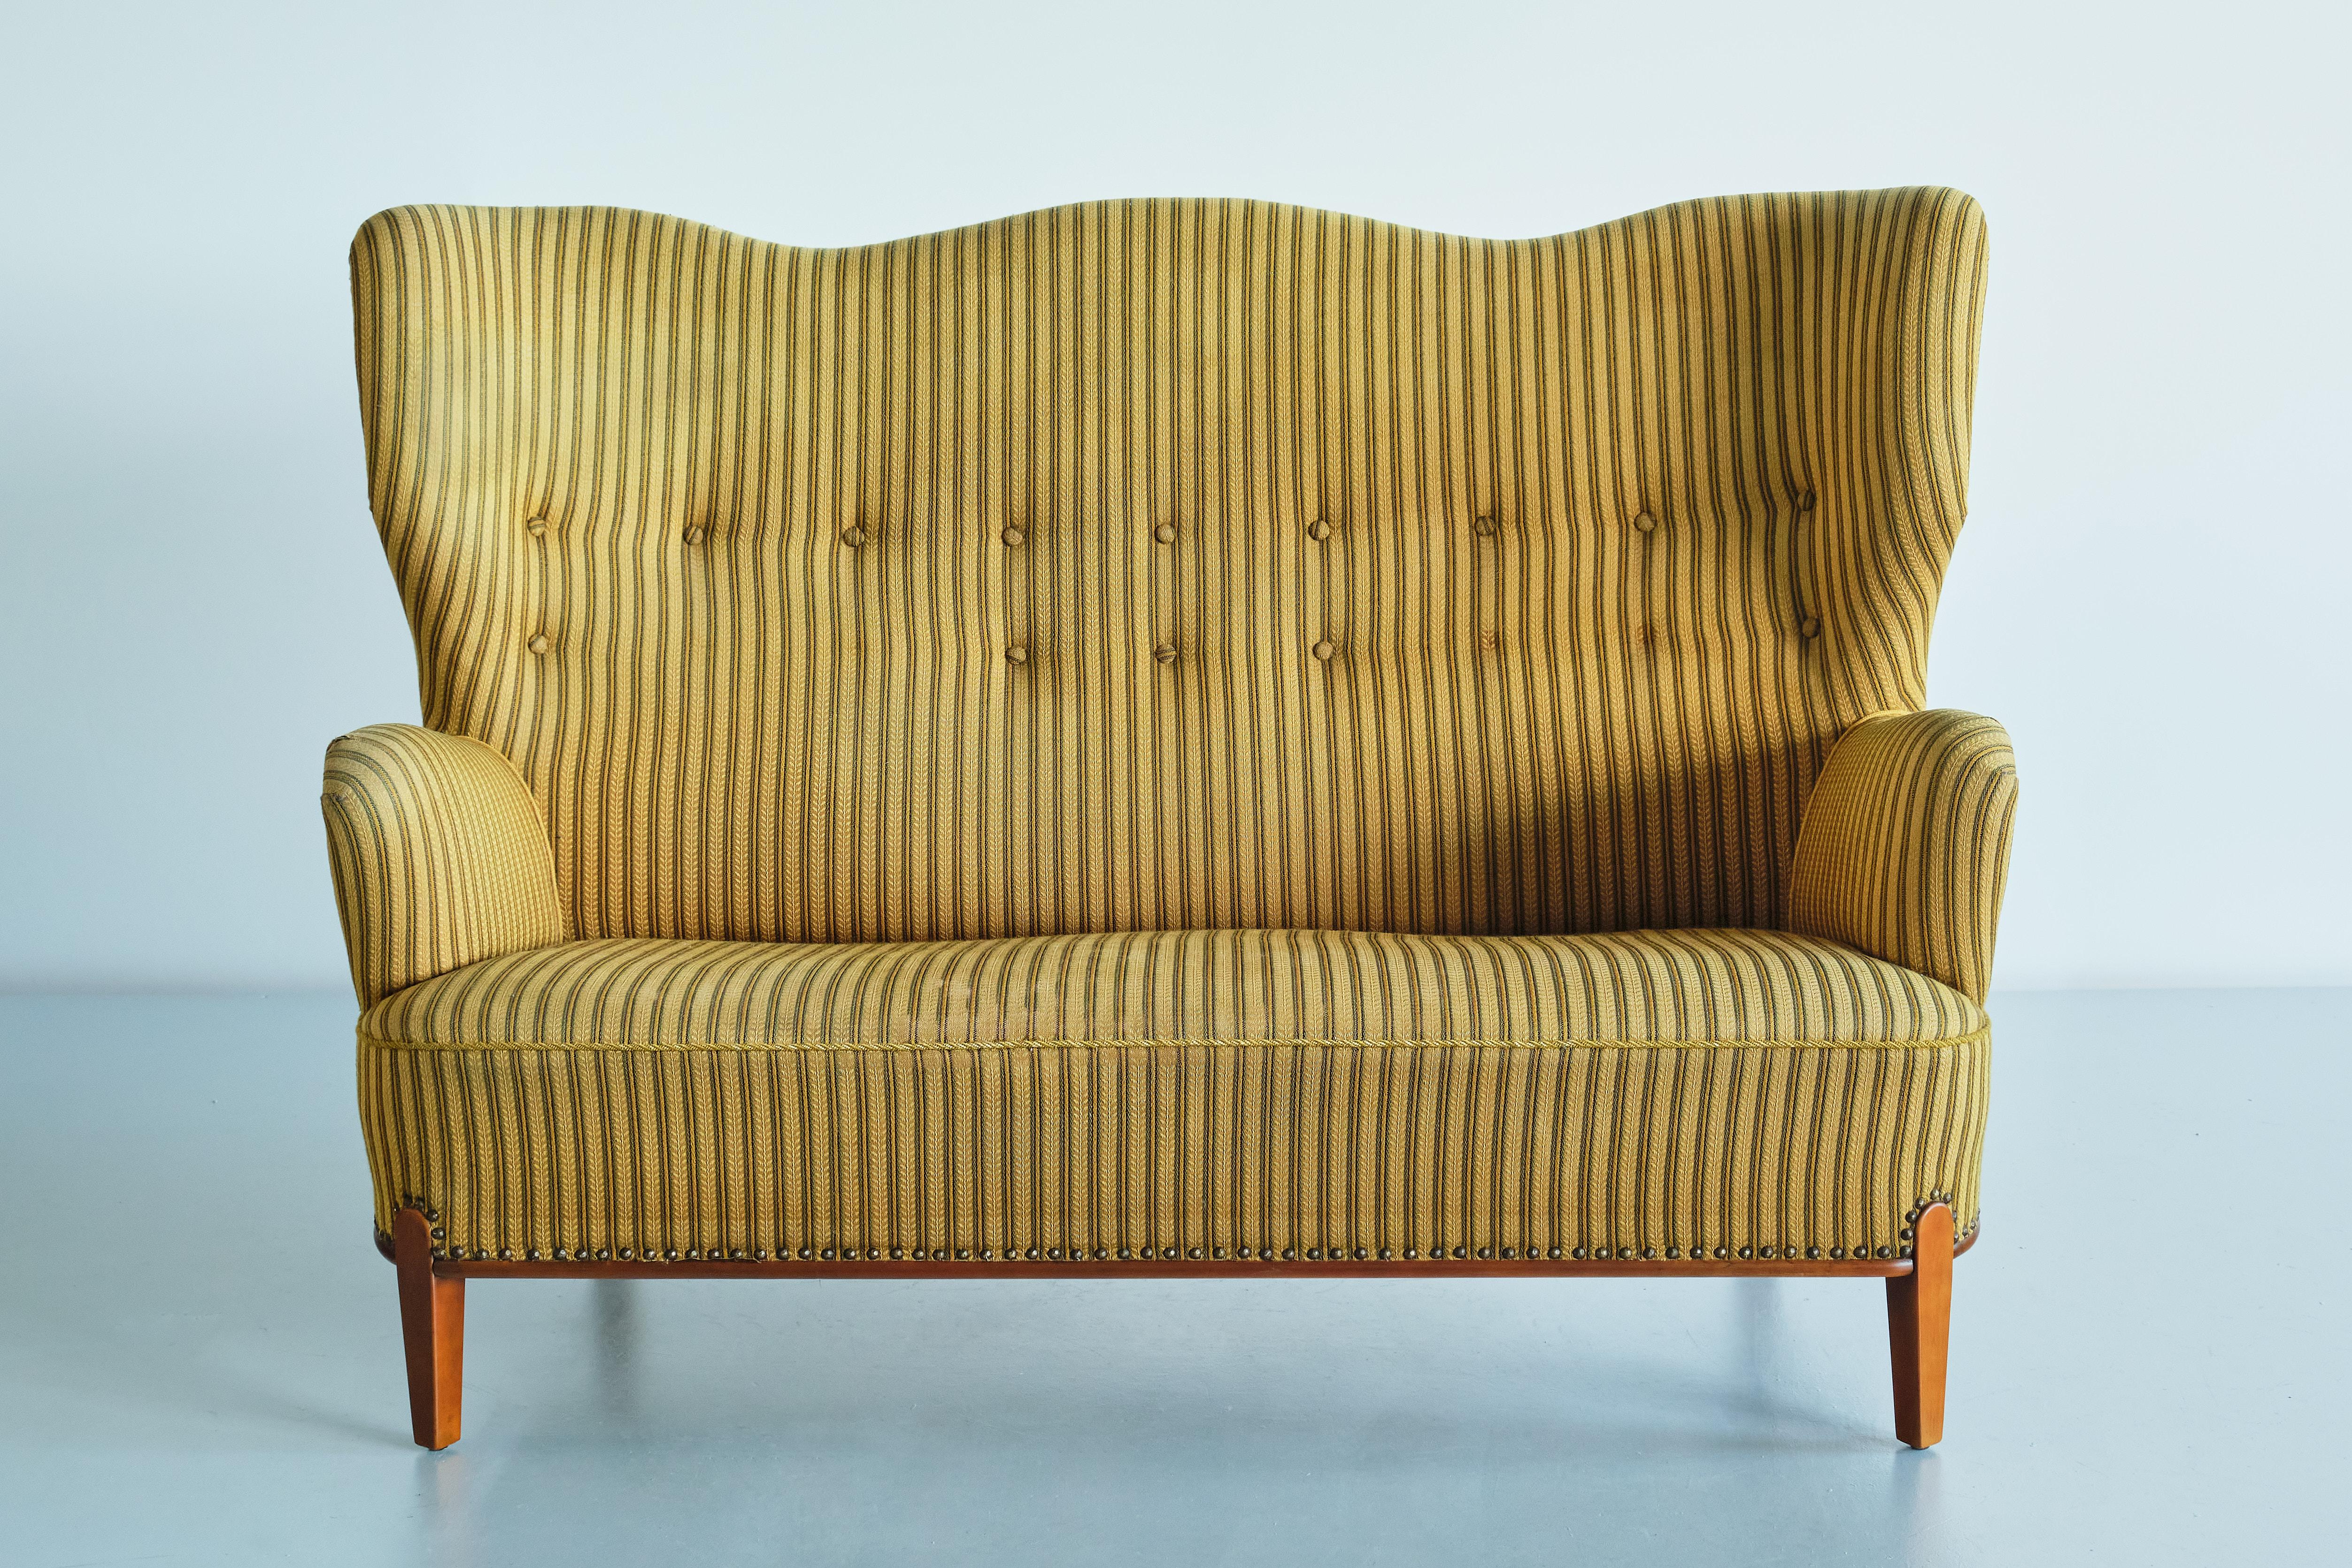 Dieses skulpturale Sofa wurde von Bertil Söderberg entworfen und in den 1940er Jahren von Nordiska Kompaniet in Schweden hergestellt. Das seltene Design zeichnet sich durch die geschwungenen Linien der geknöpften Rückenlehne aus, die in